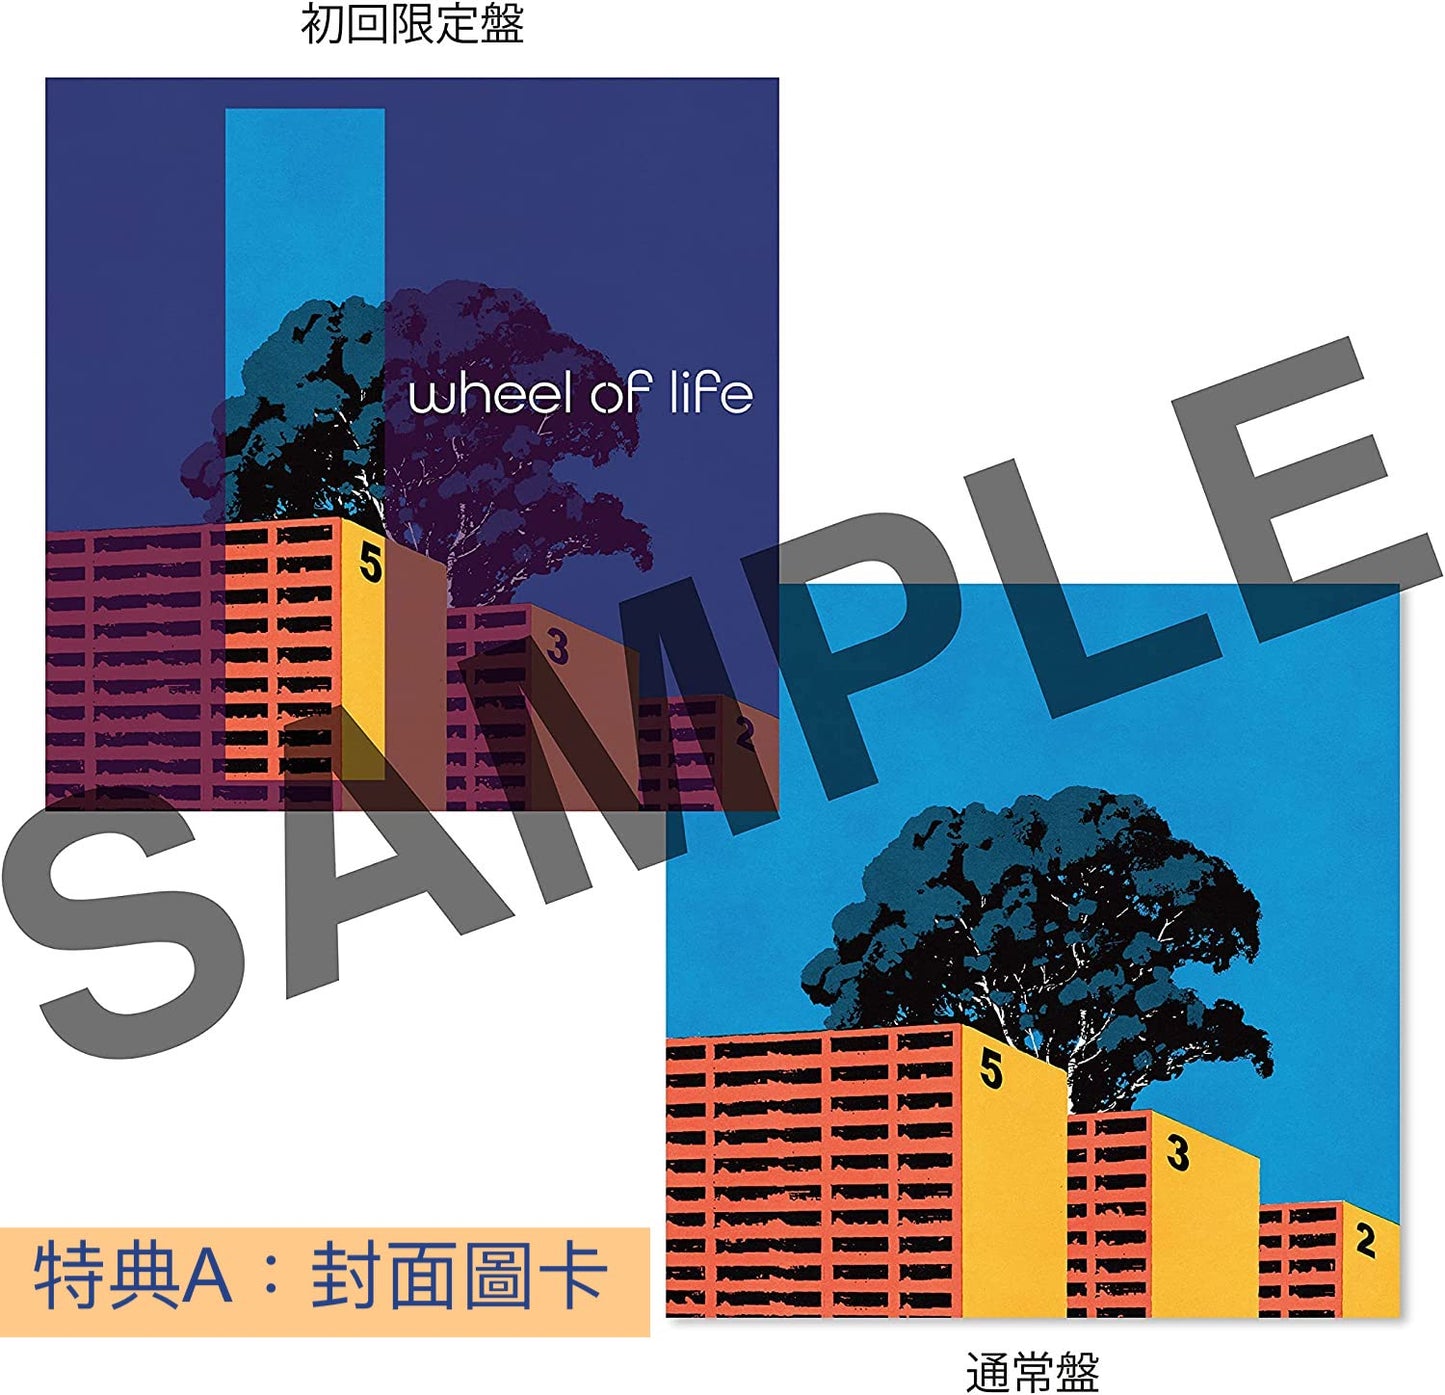 マカロニえんぴつ (Macaroni Empitsu) 第3張EP《wheel of life》日劇「如果能說100萬次就好了」主題曲